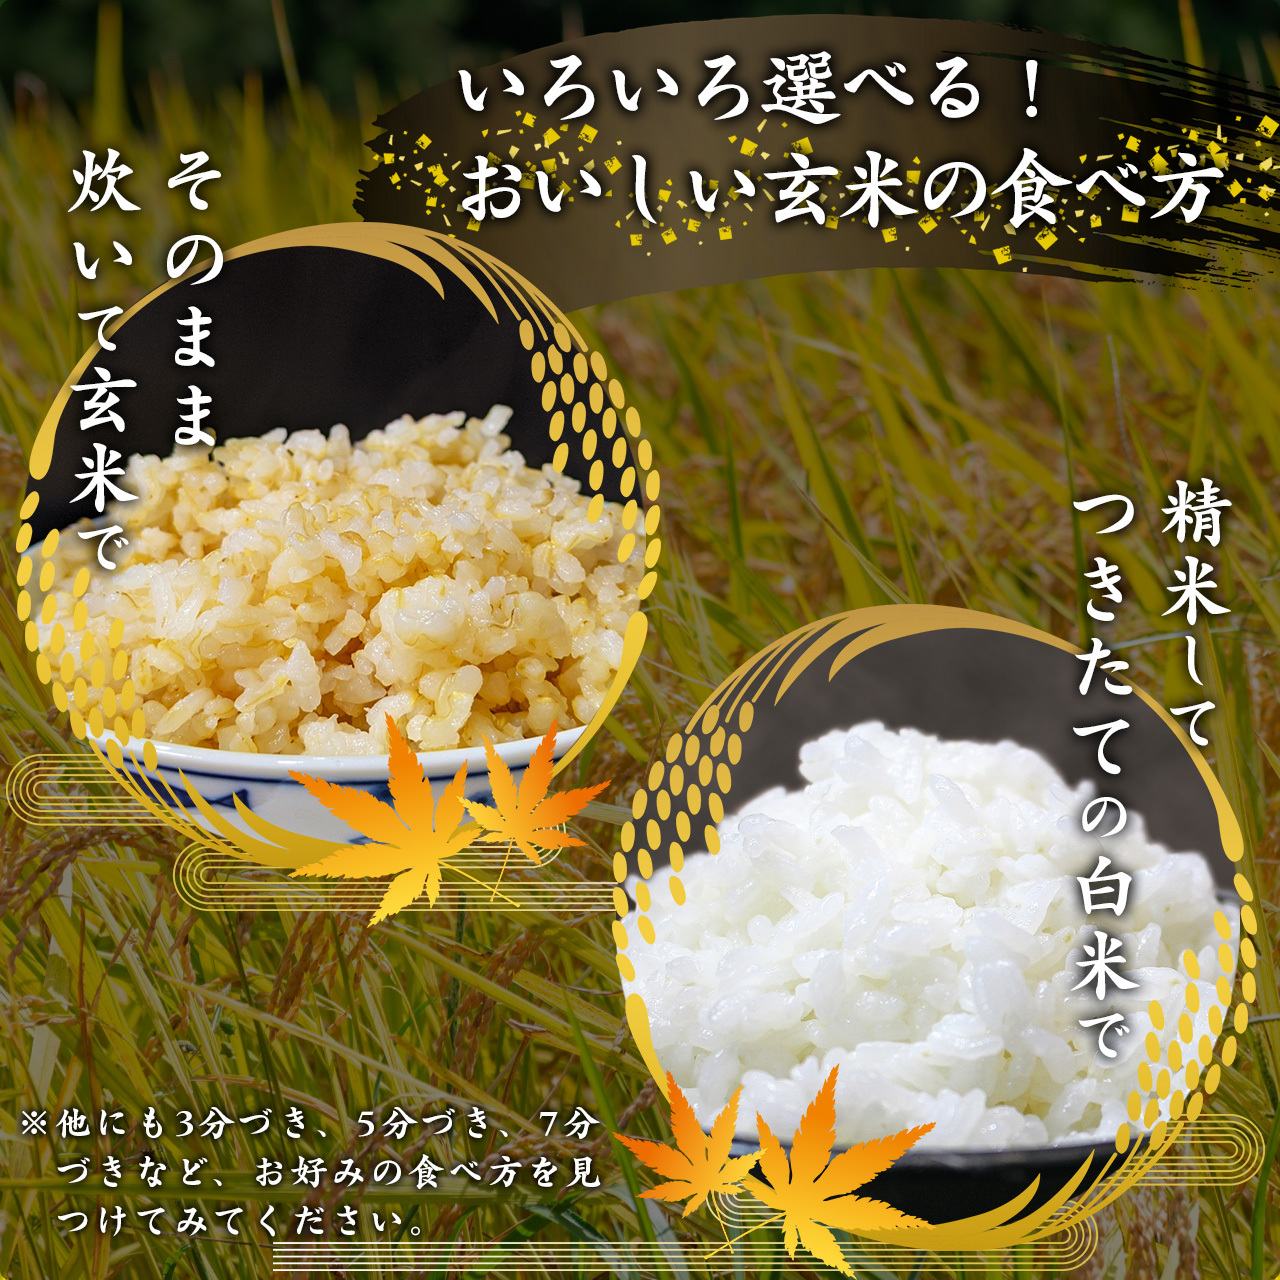 新米5年産 10kg 島根仁多米こしひかり特別栽培米 7分搗き米